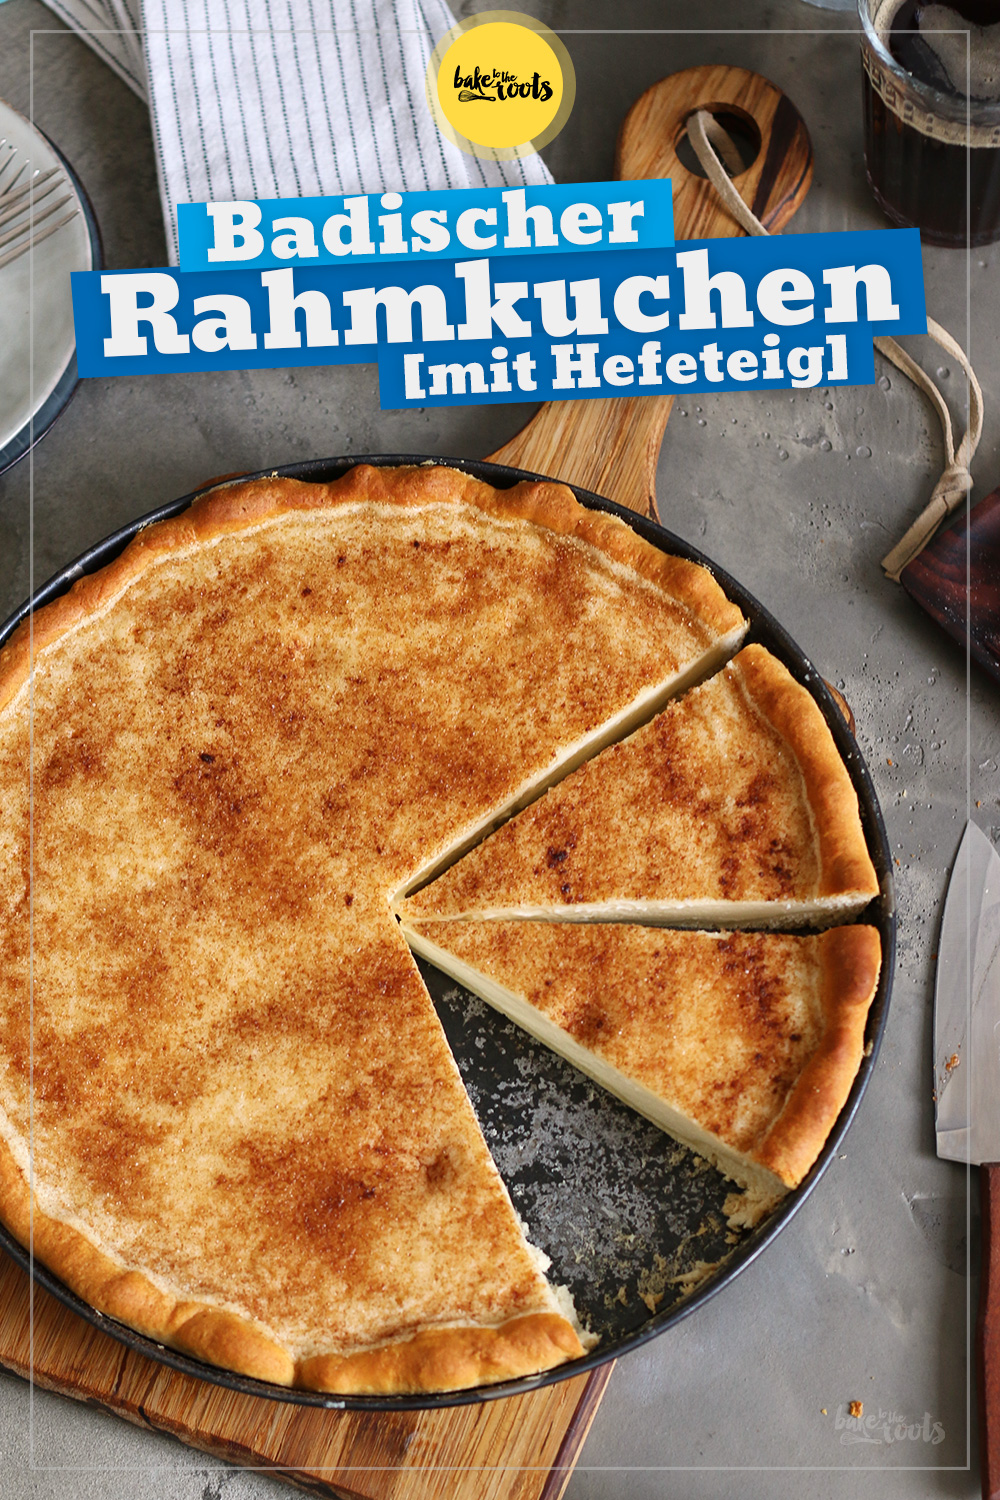 Badischer Hefe Rahmkuchen | Bake to the roots